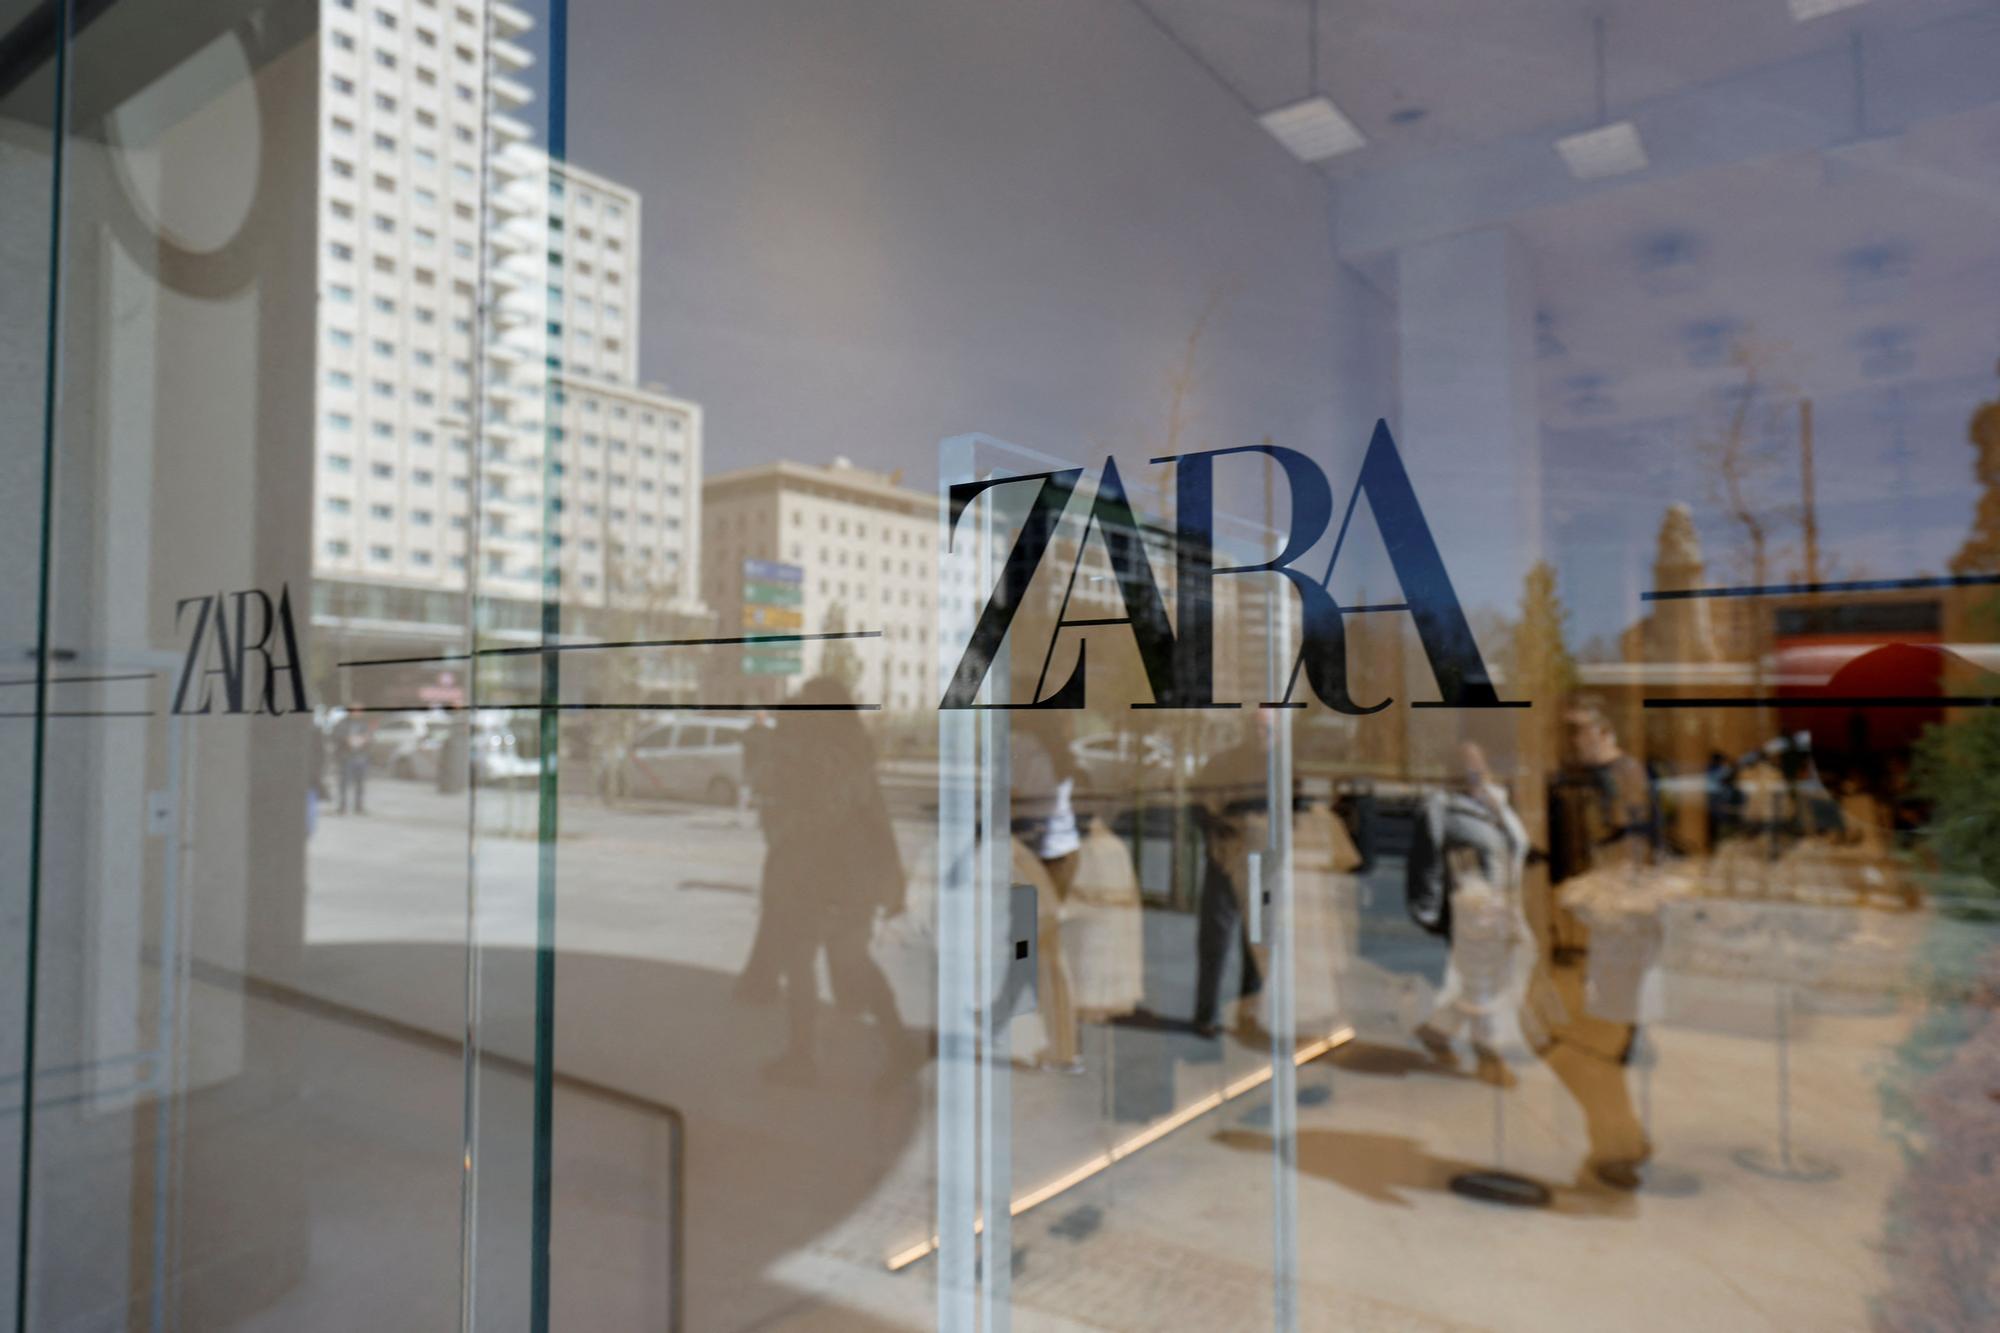 El modelo más avanzado de Zara se instala en la plaza de España de Madrid